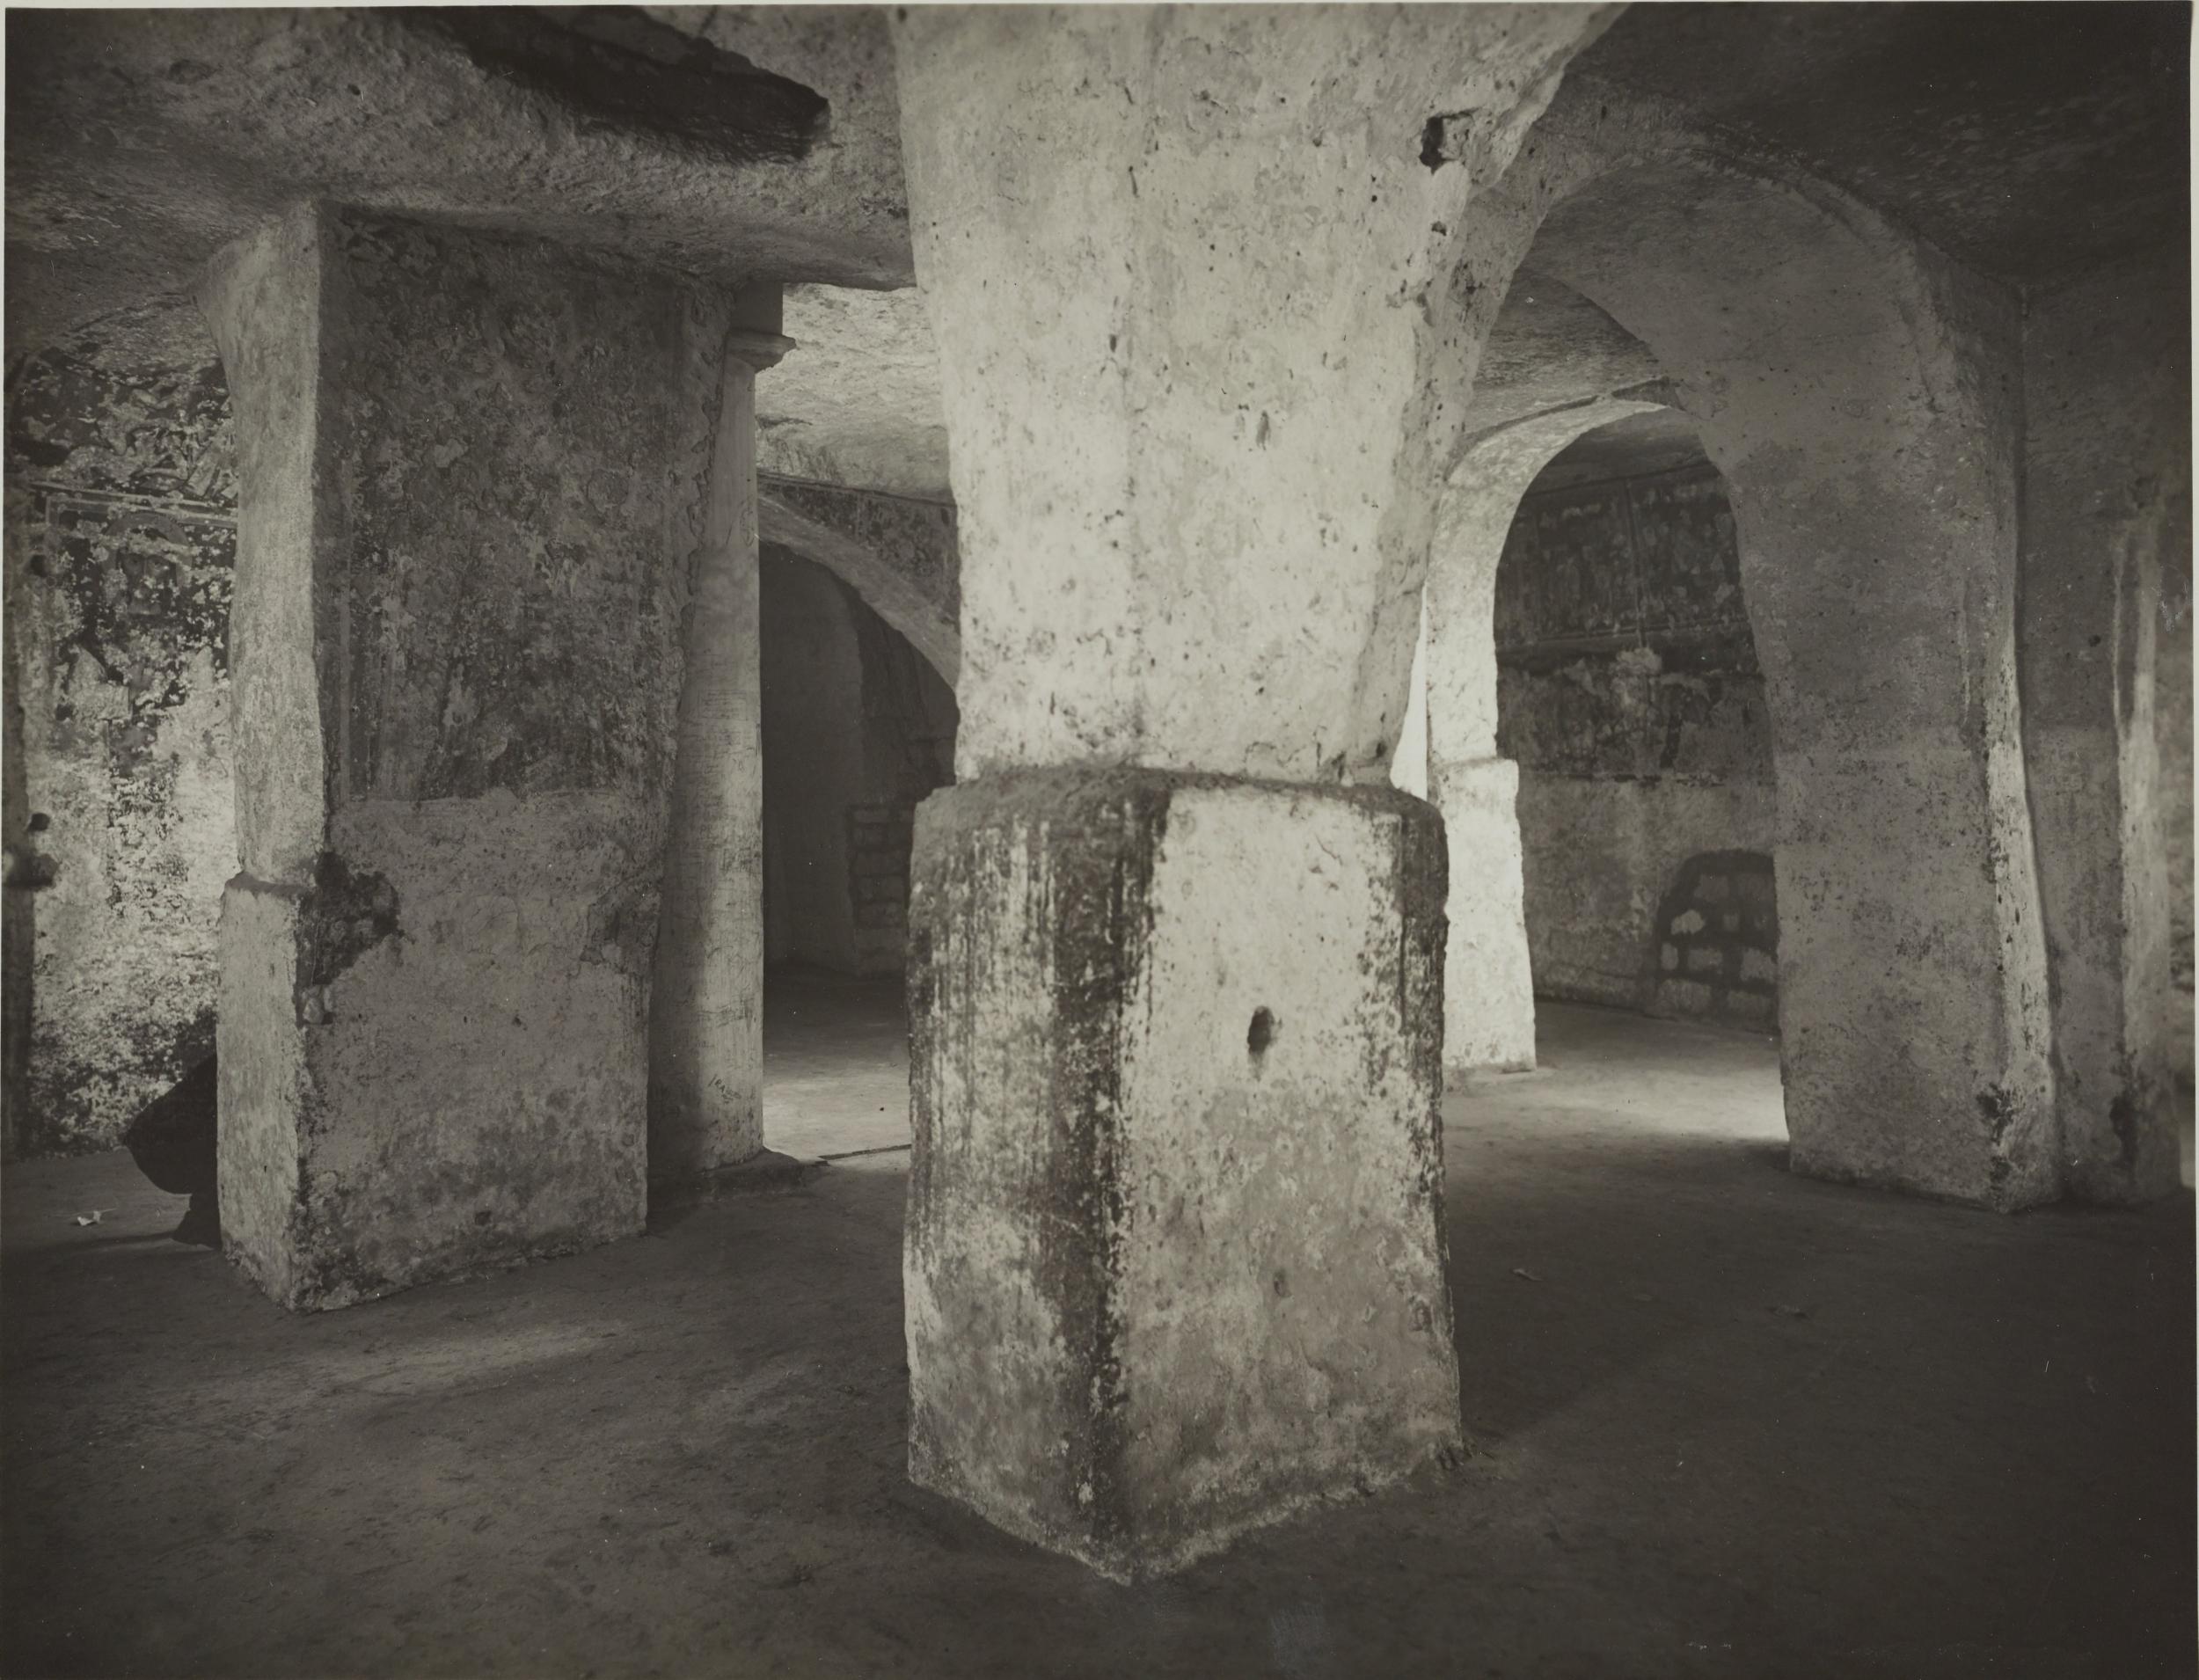 Fotografo non identificato, Andria - Chiesa di S. Croce, cripta, 1926-1950, gelatina ai sali d'argento/carta, MPI131854